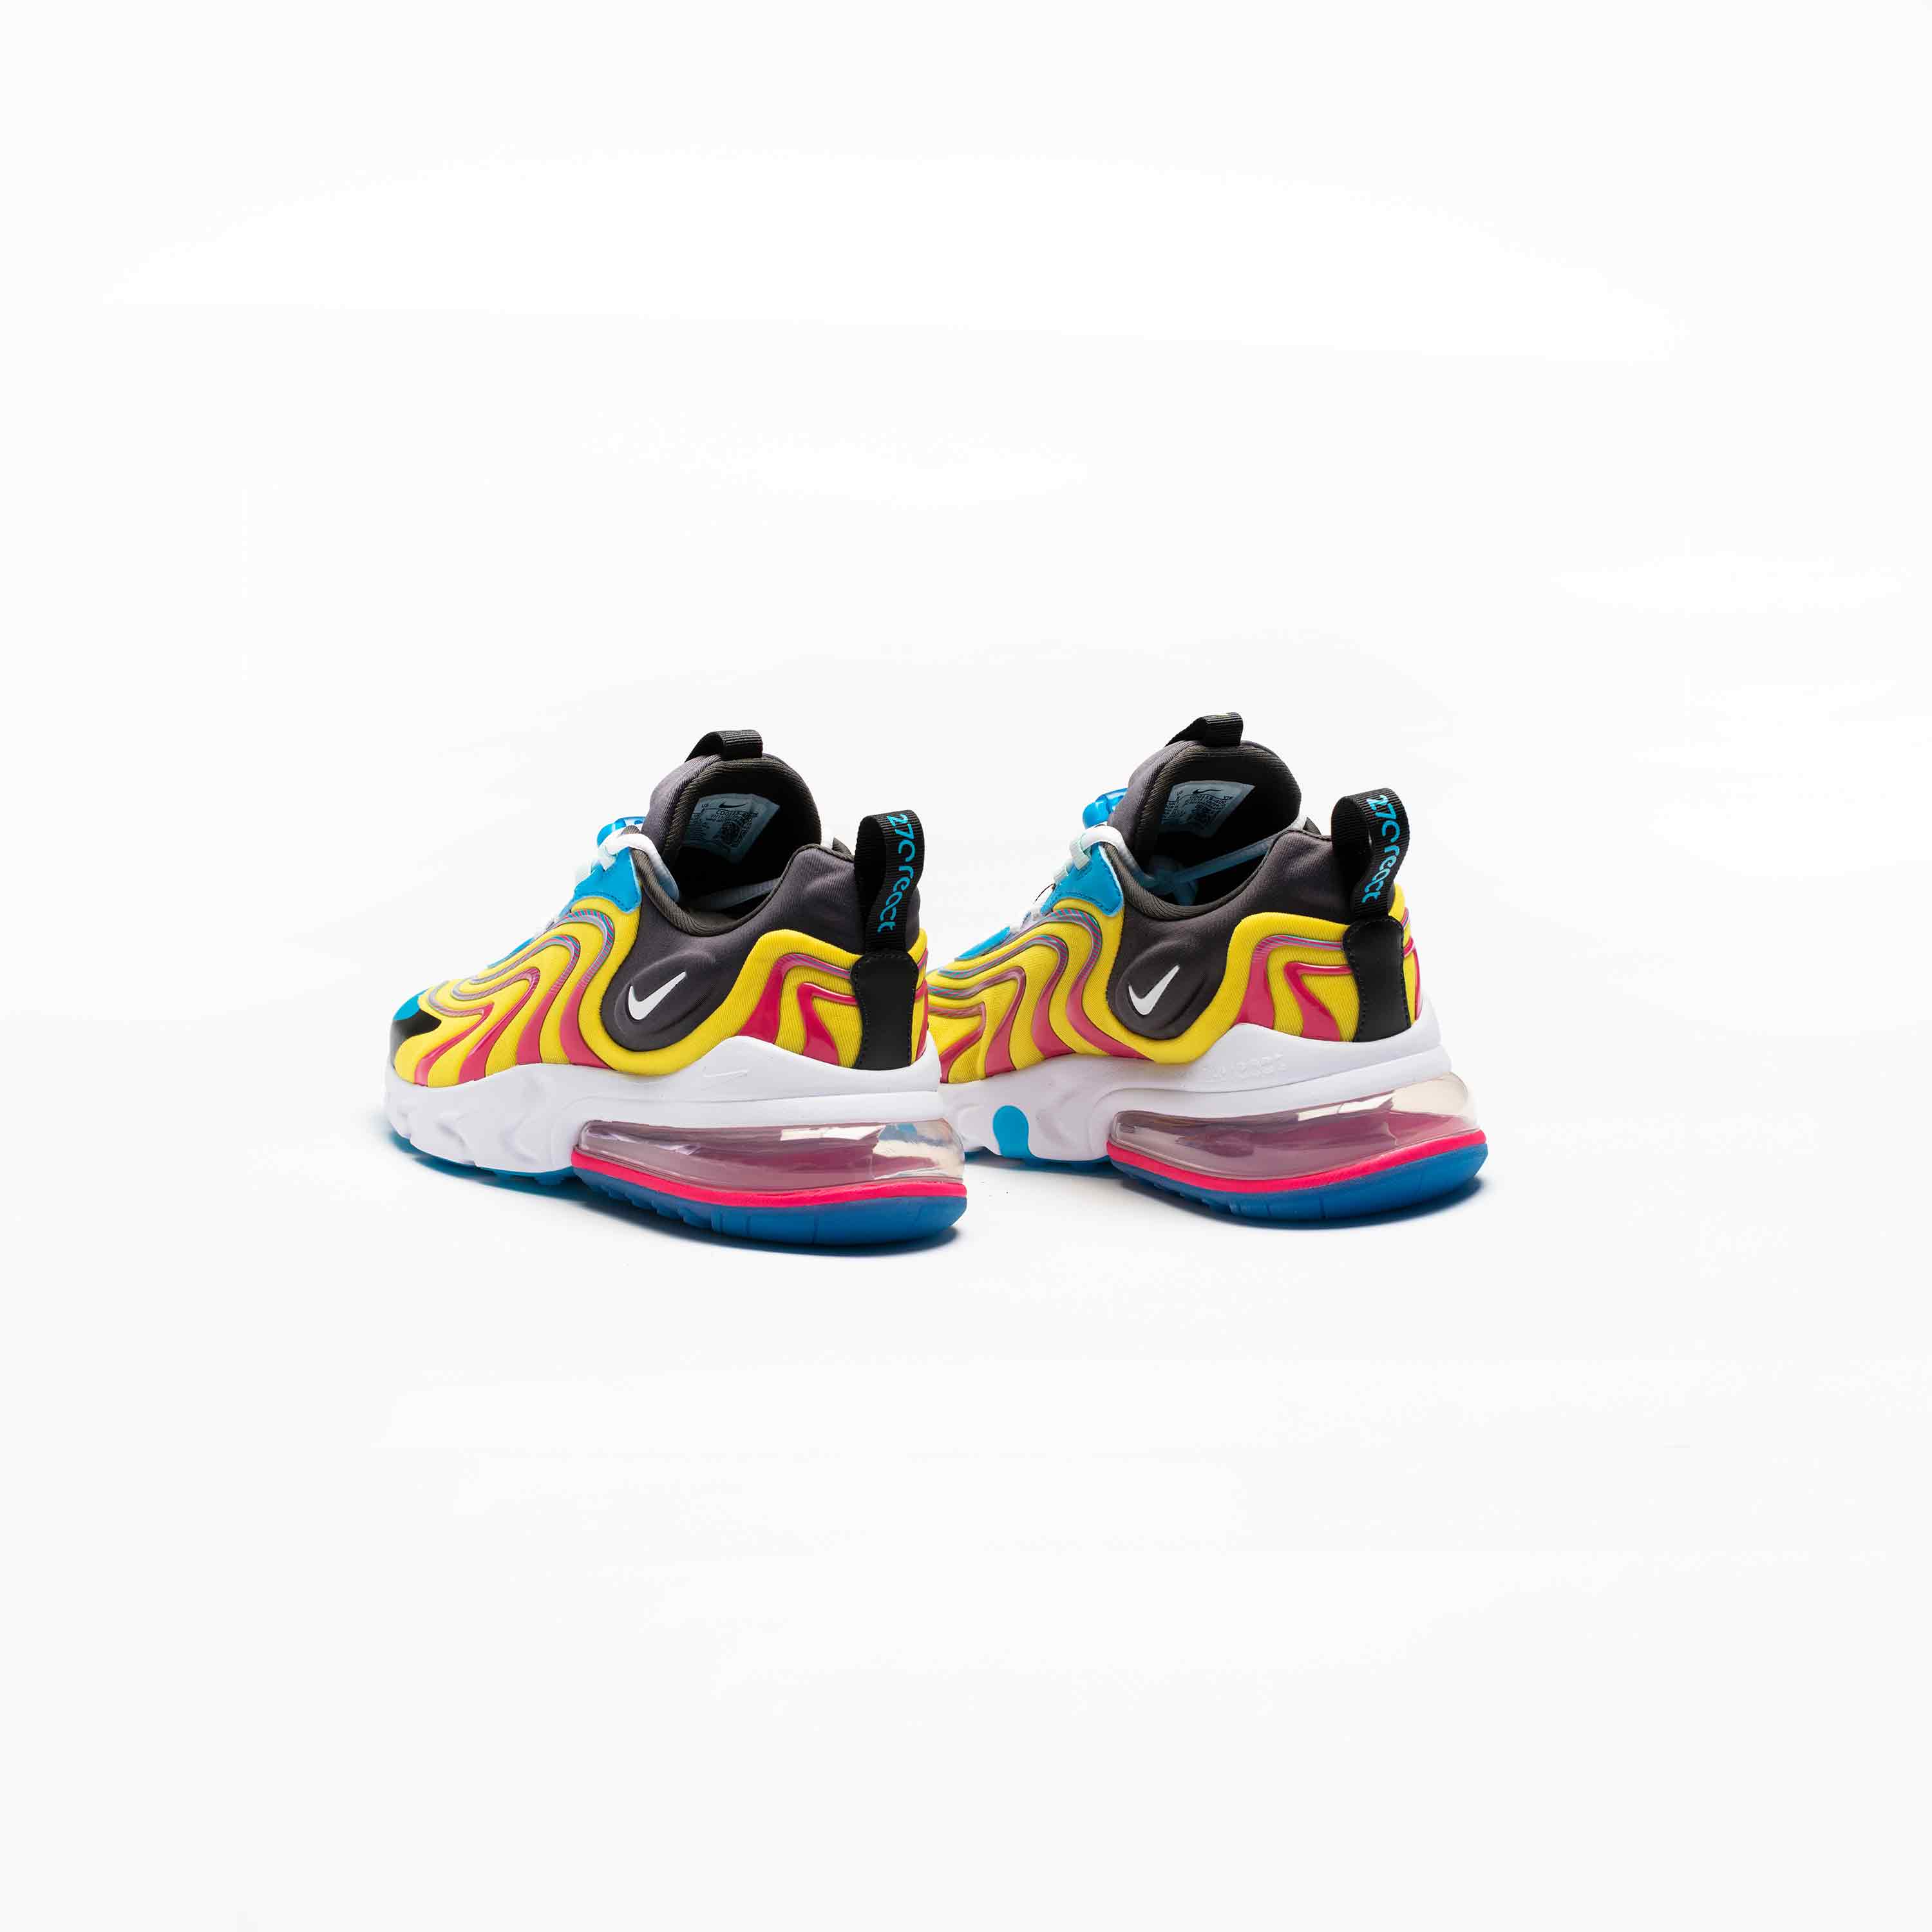 Nike Men's Air Max 270 React Sneakers